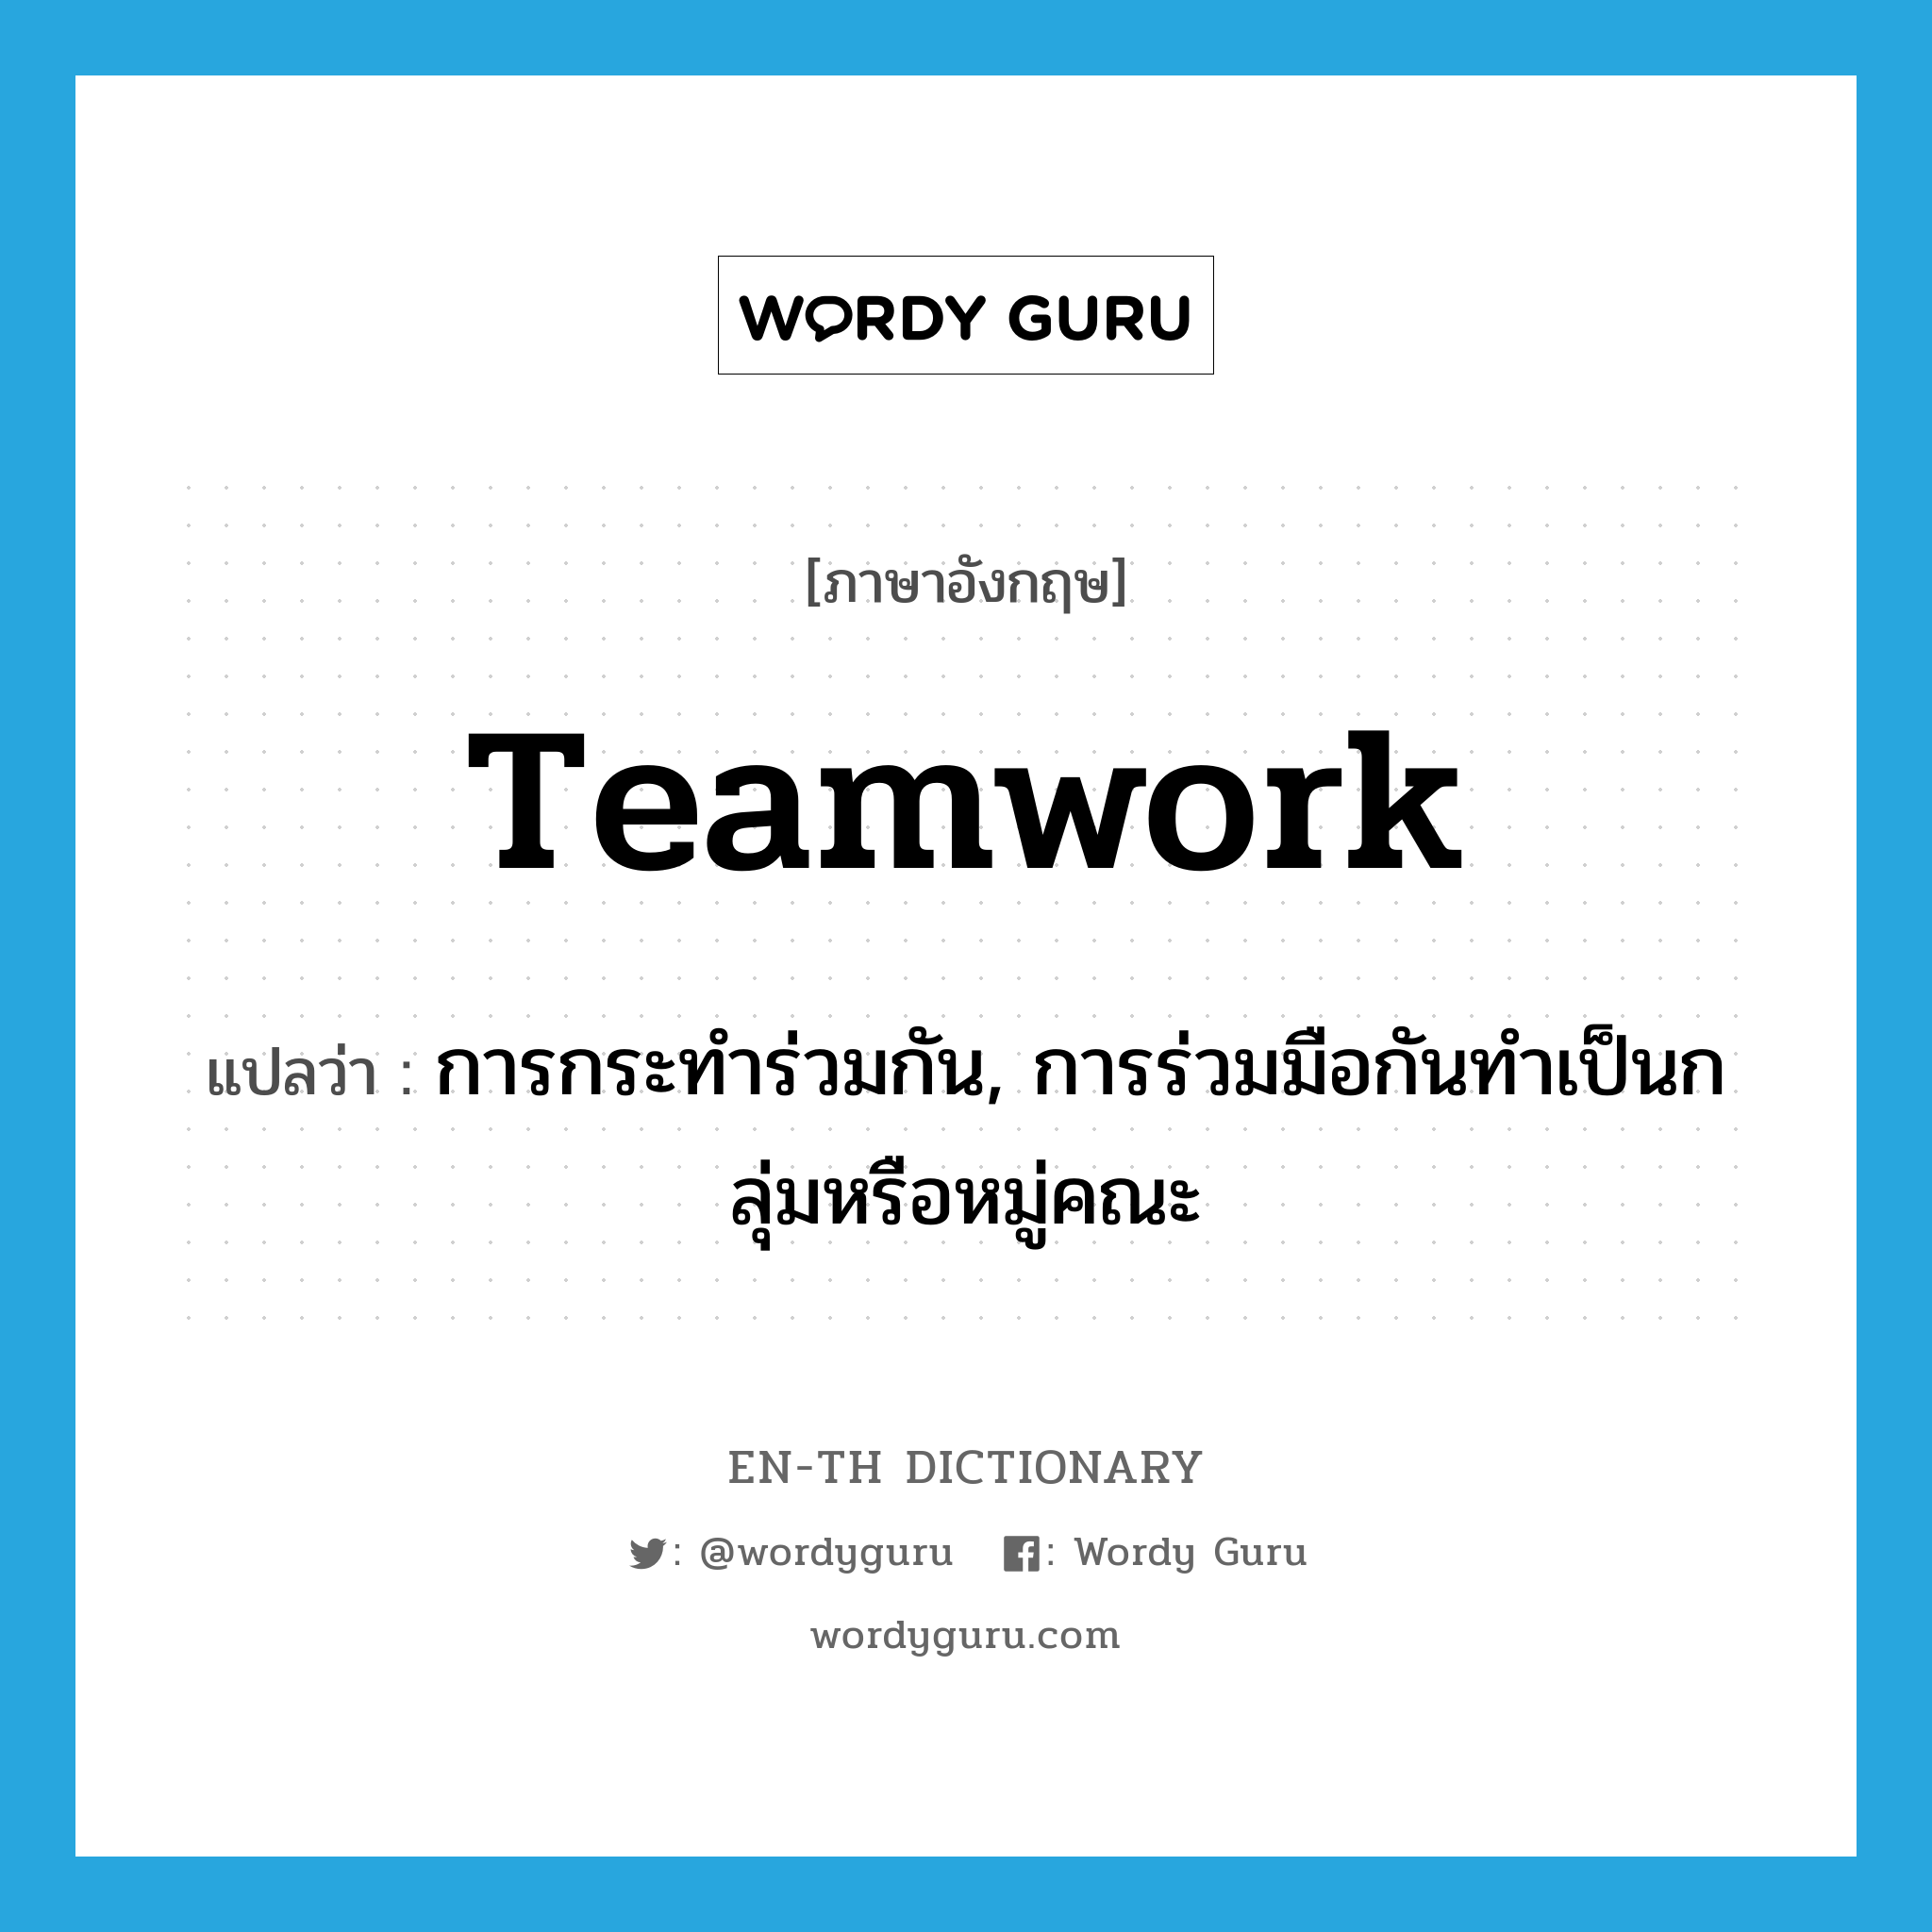 การกระทำร่วมกัน, การร่วมมือกันทำเป็นกลุ่มหรือหมู่คณะ ภาษาอังกฤษ?, คำศัพท์ภาษาอังกฤษ การกระทำร่วมกัน, การร่วมมือกันทำเป็นกลุ่มหรือหมู่คณะ แปลว่า teamwork ประเภท N หมวด N